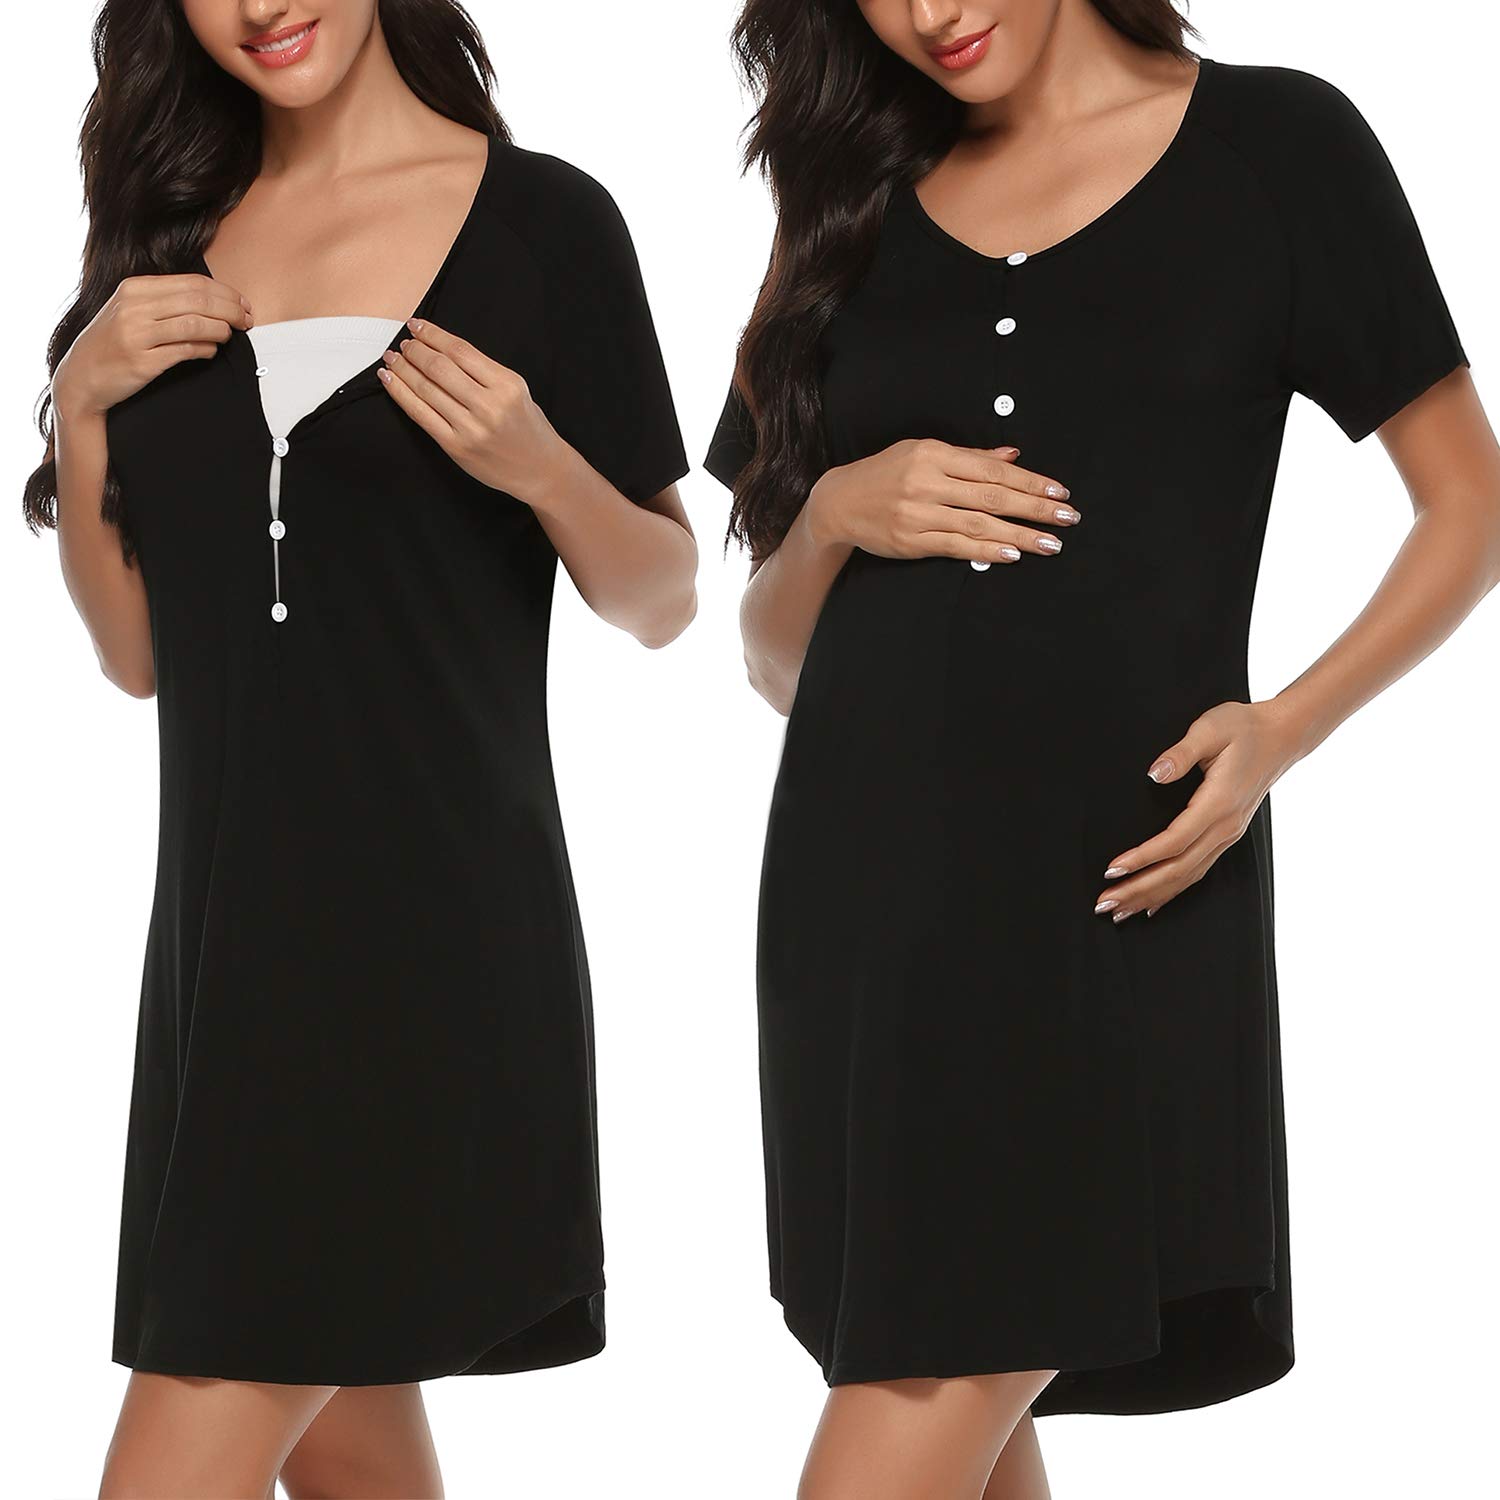 Sykooria Women's Maternity Nightdress Breastfeeding Nightwear